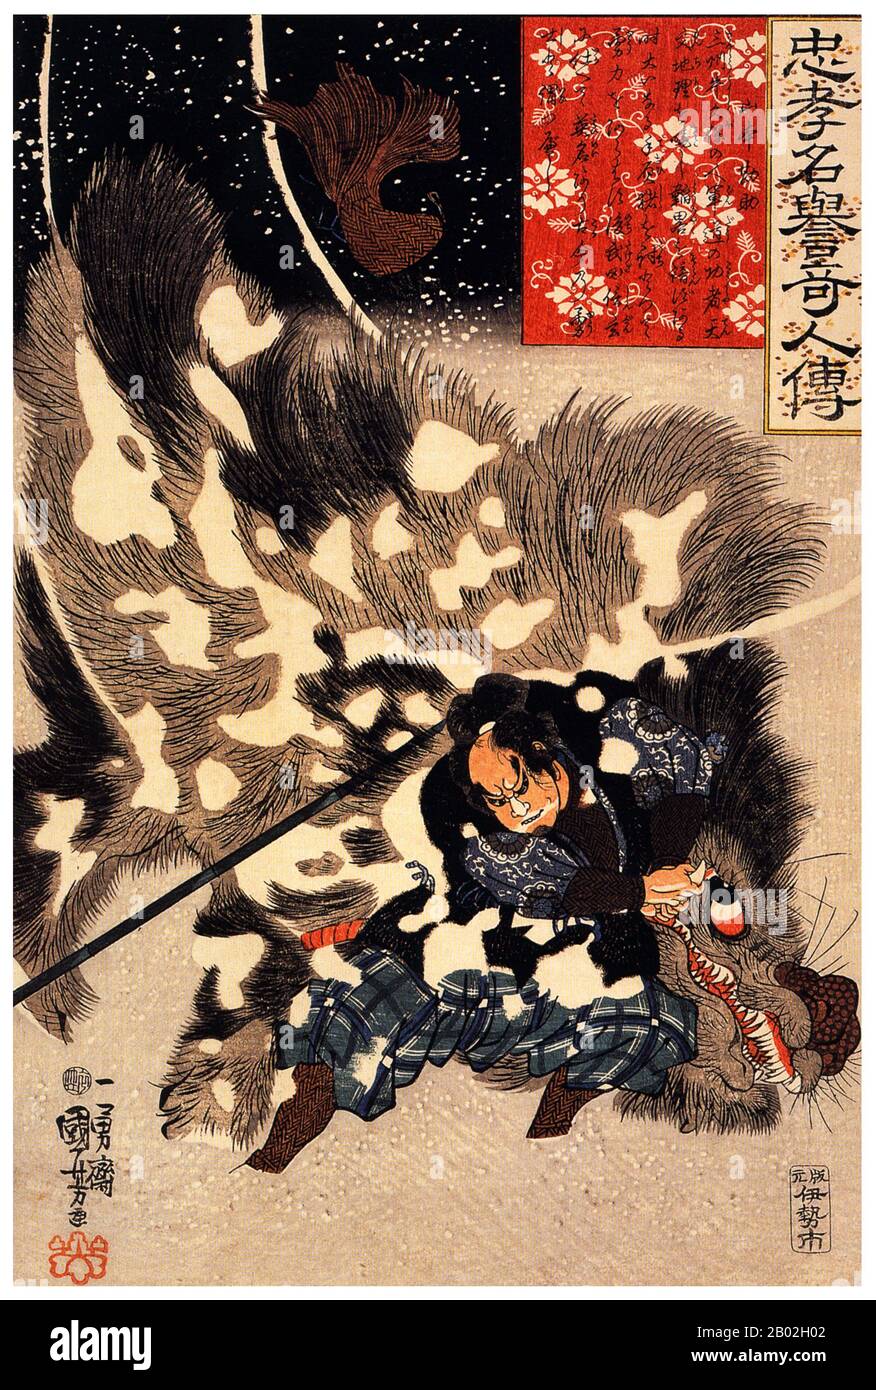 Yamamoto Kansuke (山本 勘助, 1501 - 18. Oktober 1561) war ein japanischer Samurai der Sengoku-Zeit. Er war als einer der "achtundzwanzig Generale von Takeda Shingen" bekannt. Auch bekannt unter seinem offiziellen Namen Haruyuki (晴幸) war er ein genialer Stratege und ist vor allem für seinen Plan bekannt, der zum Sieg in der vierten Schlacht von Kawanakajima (10. September 1561) gegen Uesugi Kenshin führte. Kansuke lebte jedoch nie, um seinen Plan erfolgreich zu sehen; als er dachte, dass er gescheitert sei, lud er kopfballweit in die Reihen des Feindes und starb im Kampf. Stockfoto